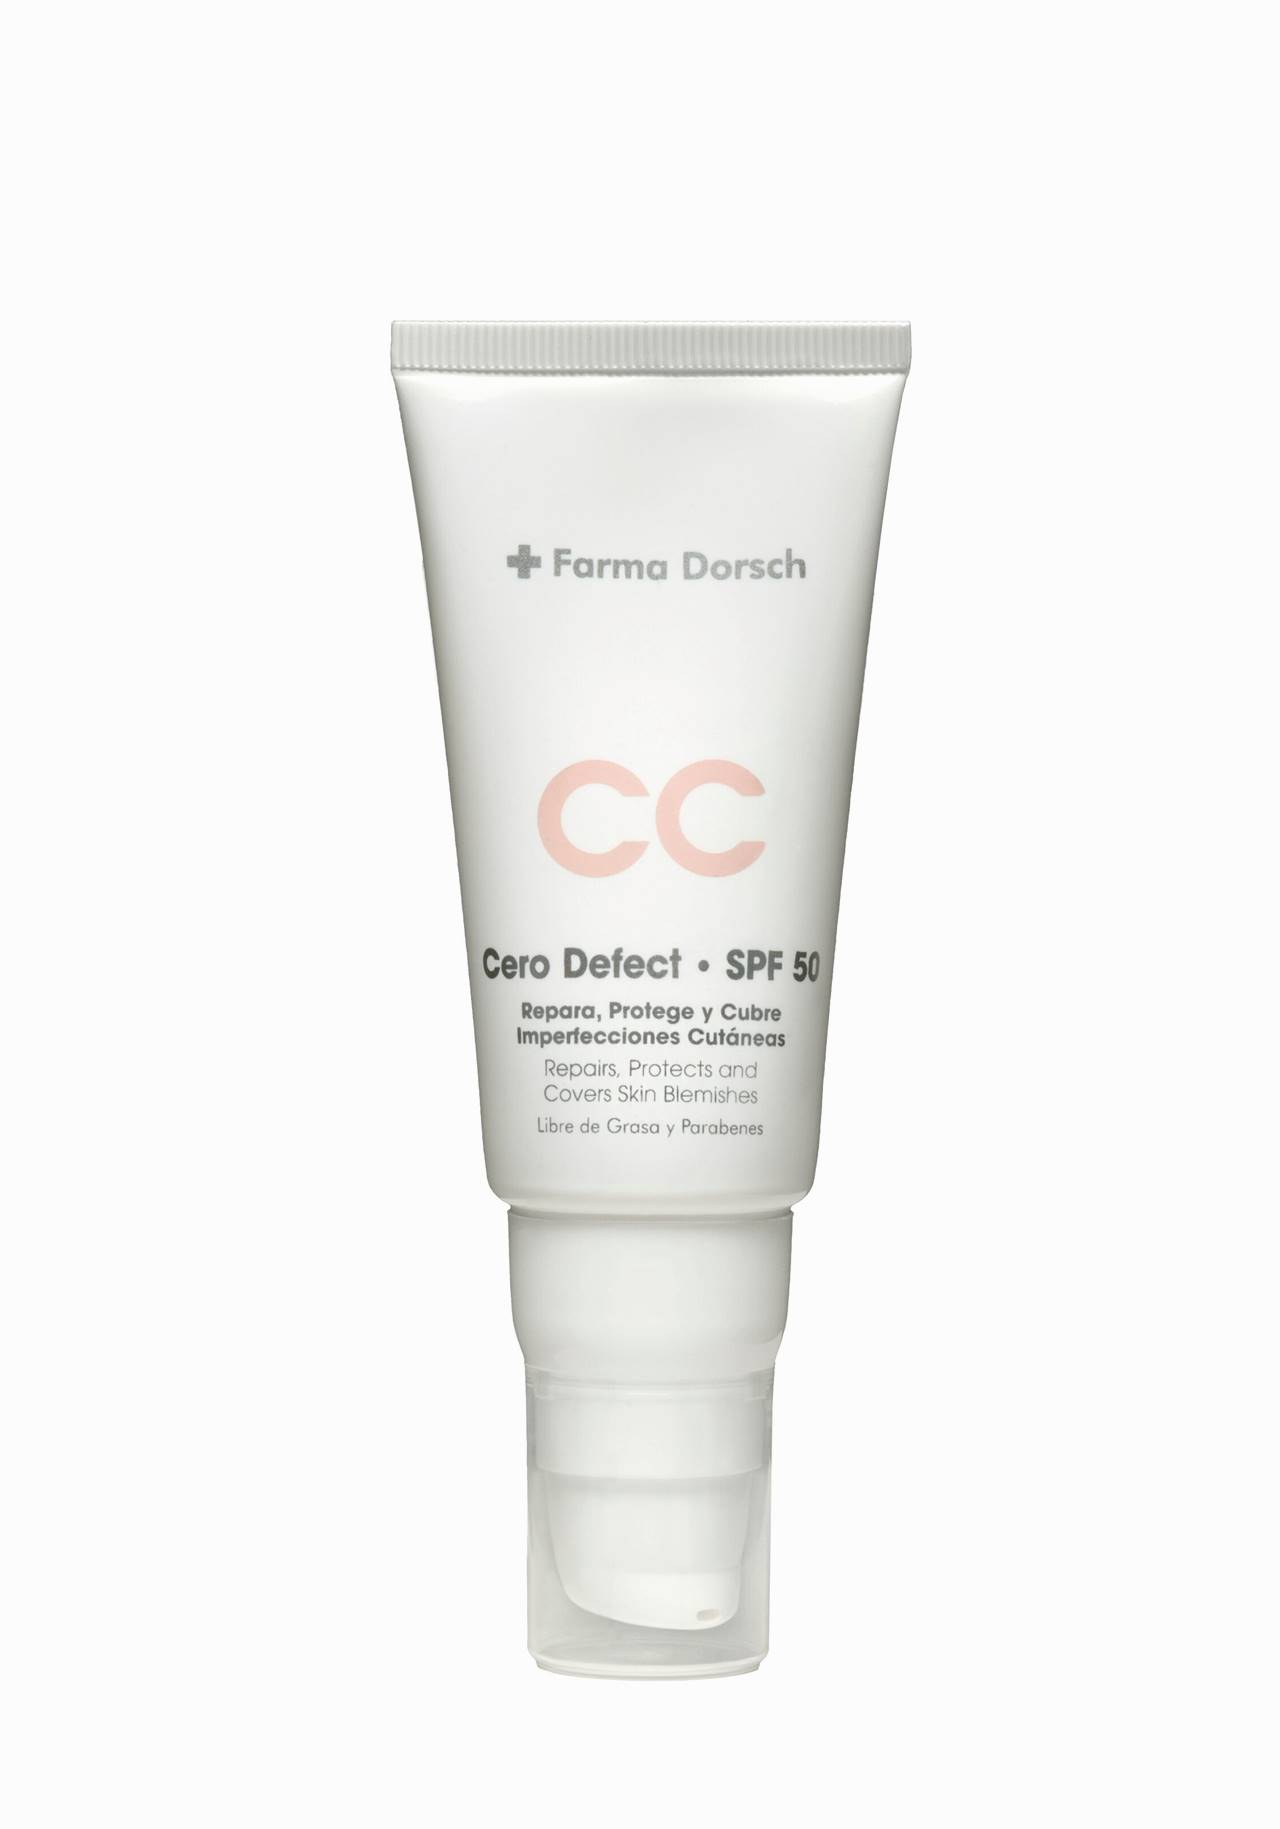 CC Cream FPS50 Cero Defect de + Farma Dorsch Aquí tienes la crema que estás buscando para un efecto buena cara inmediato